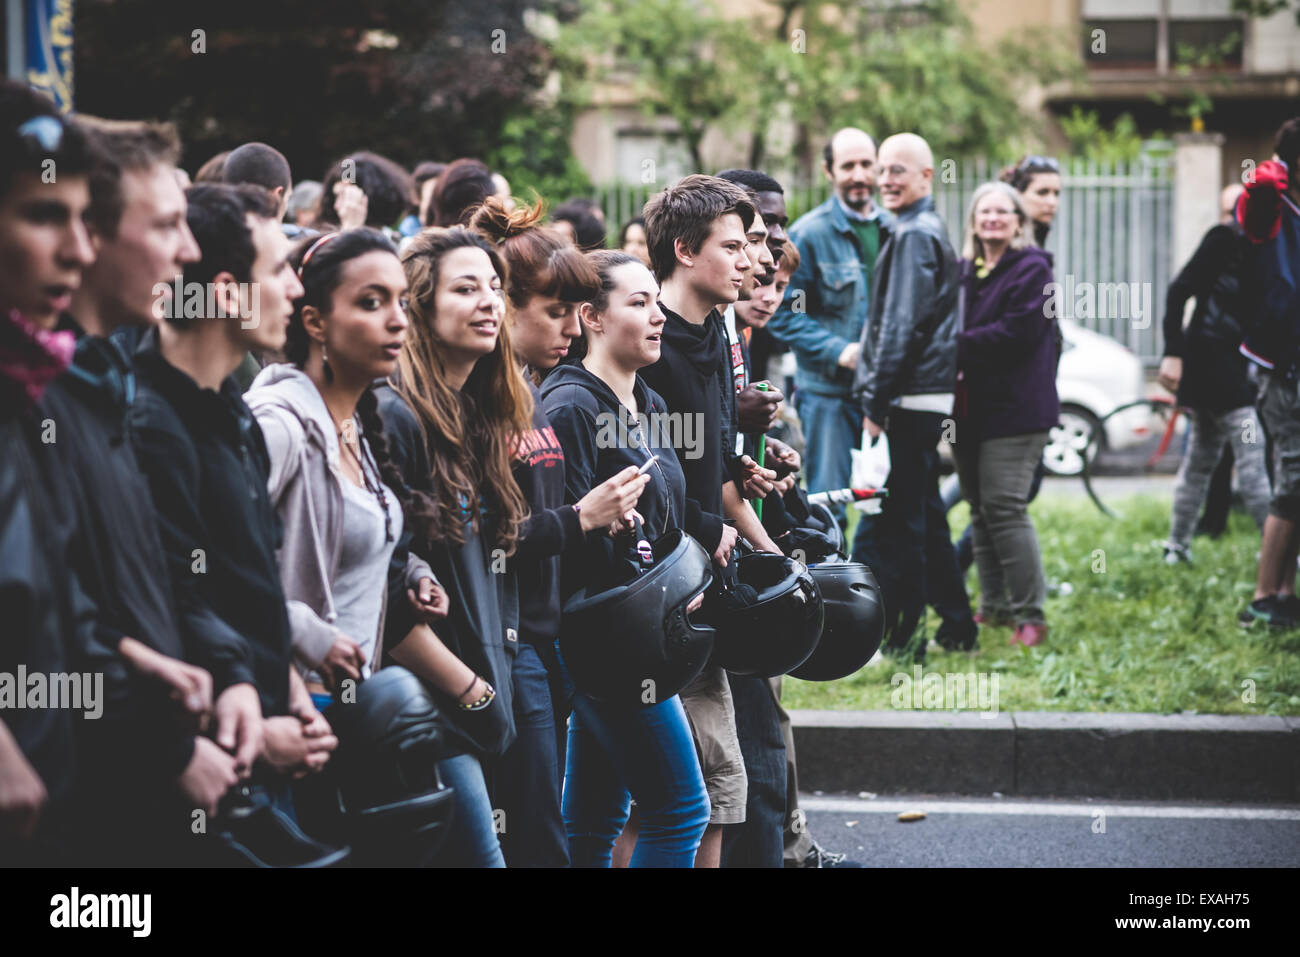 Milano, Italia - 29 aprile: manifestazione contro il fascismo e il nazismo a Milano il 29 aprile 2014. La gente ha preso le strade di Milano per protestare contro il neo nazisti e fascisti gruppi presenti a Milano Foto Stock